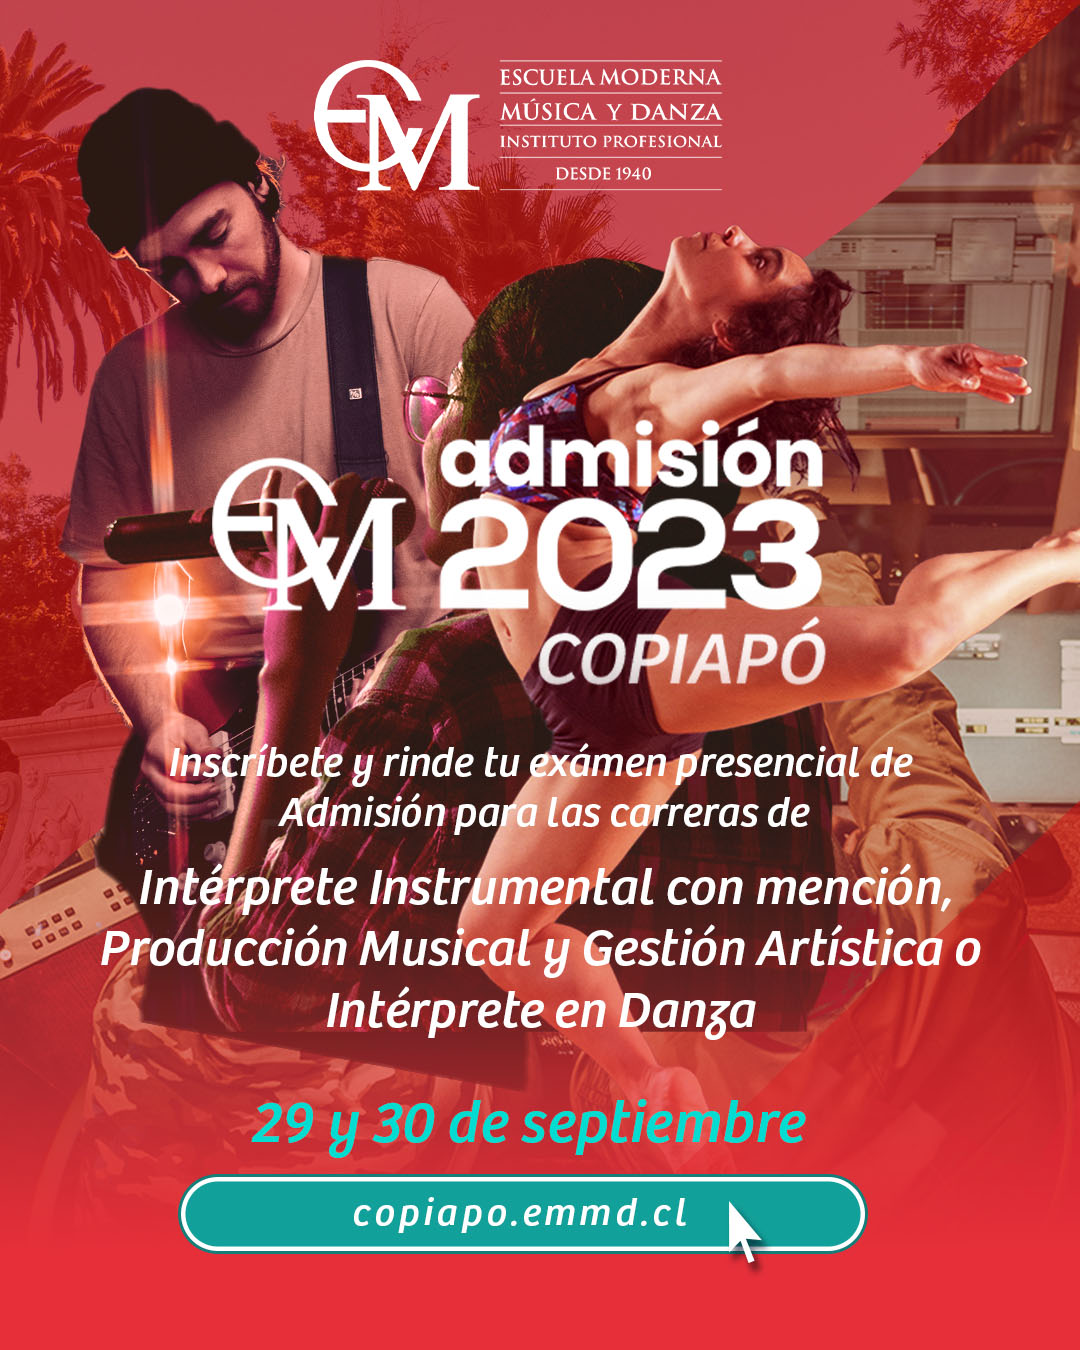 Escuela Moderna de Música y Danza realizará pruebas de admisión en Copiapó